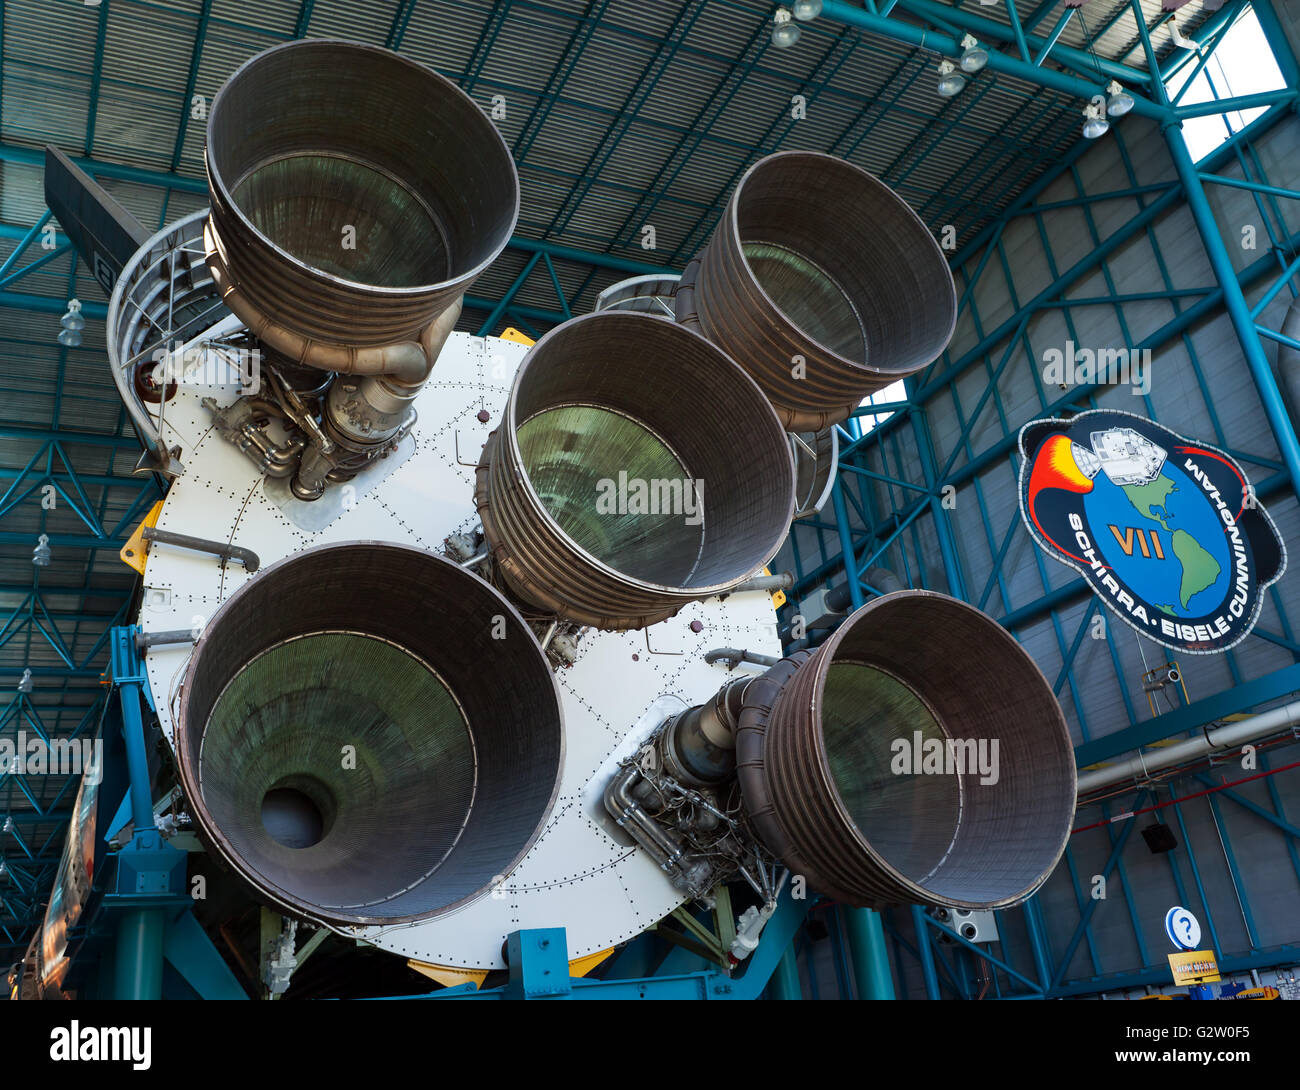 Riesige Raketenmotoren auf der ersten Etappe der NASA Saturn V Rakete, die in das Apollo-Programm verwendet wurde, um Männer auf den Mond zu bringen. Stockfoto